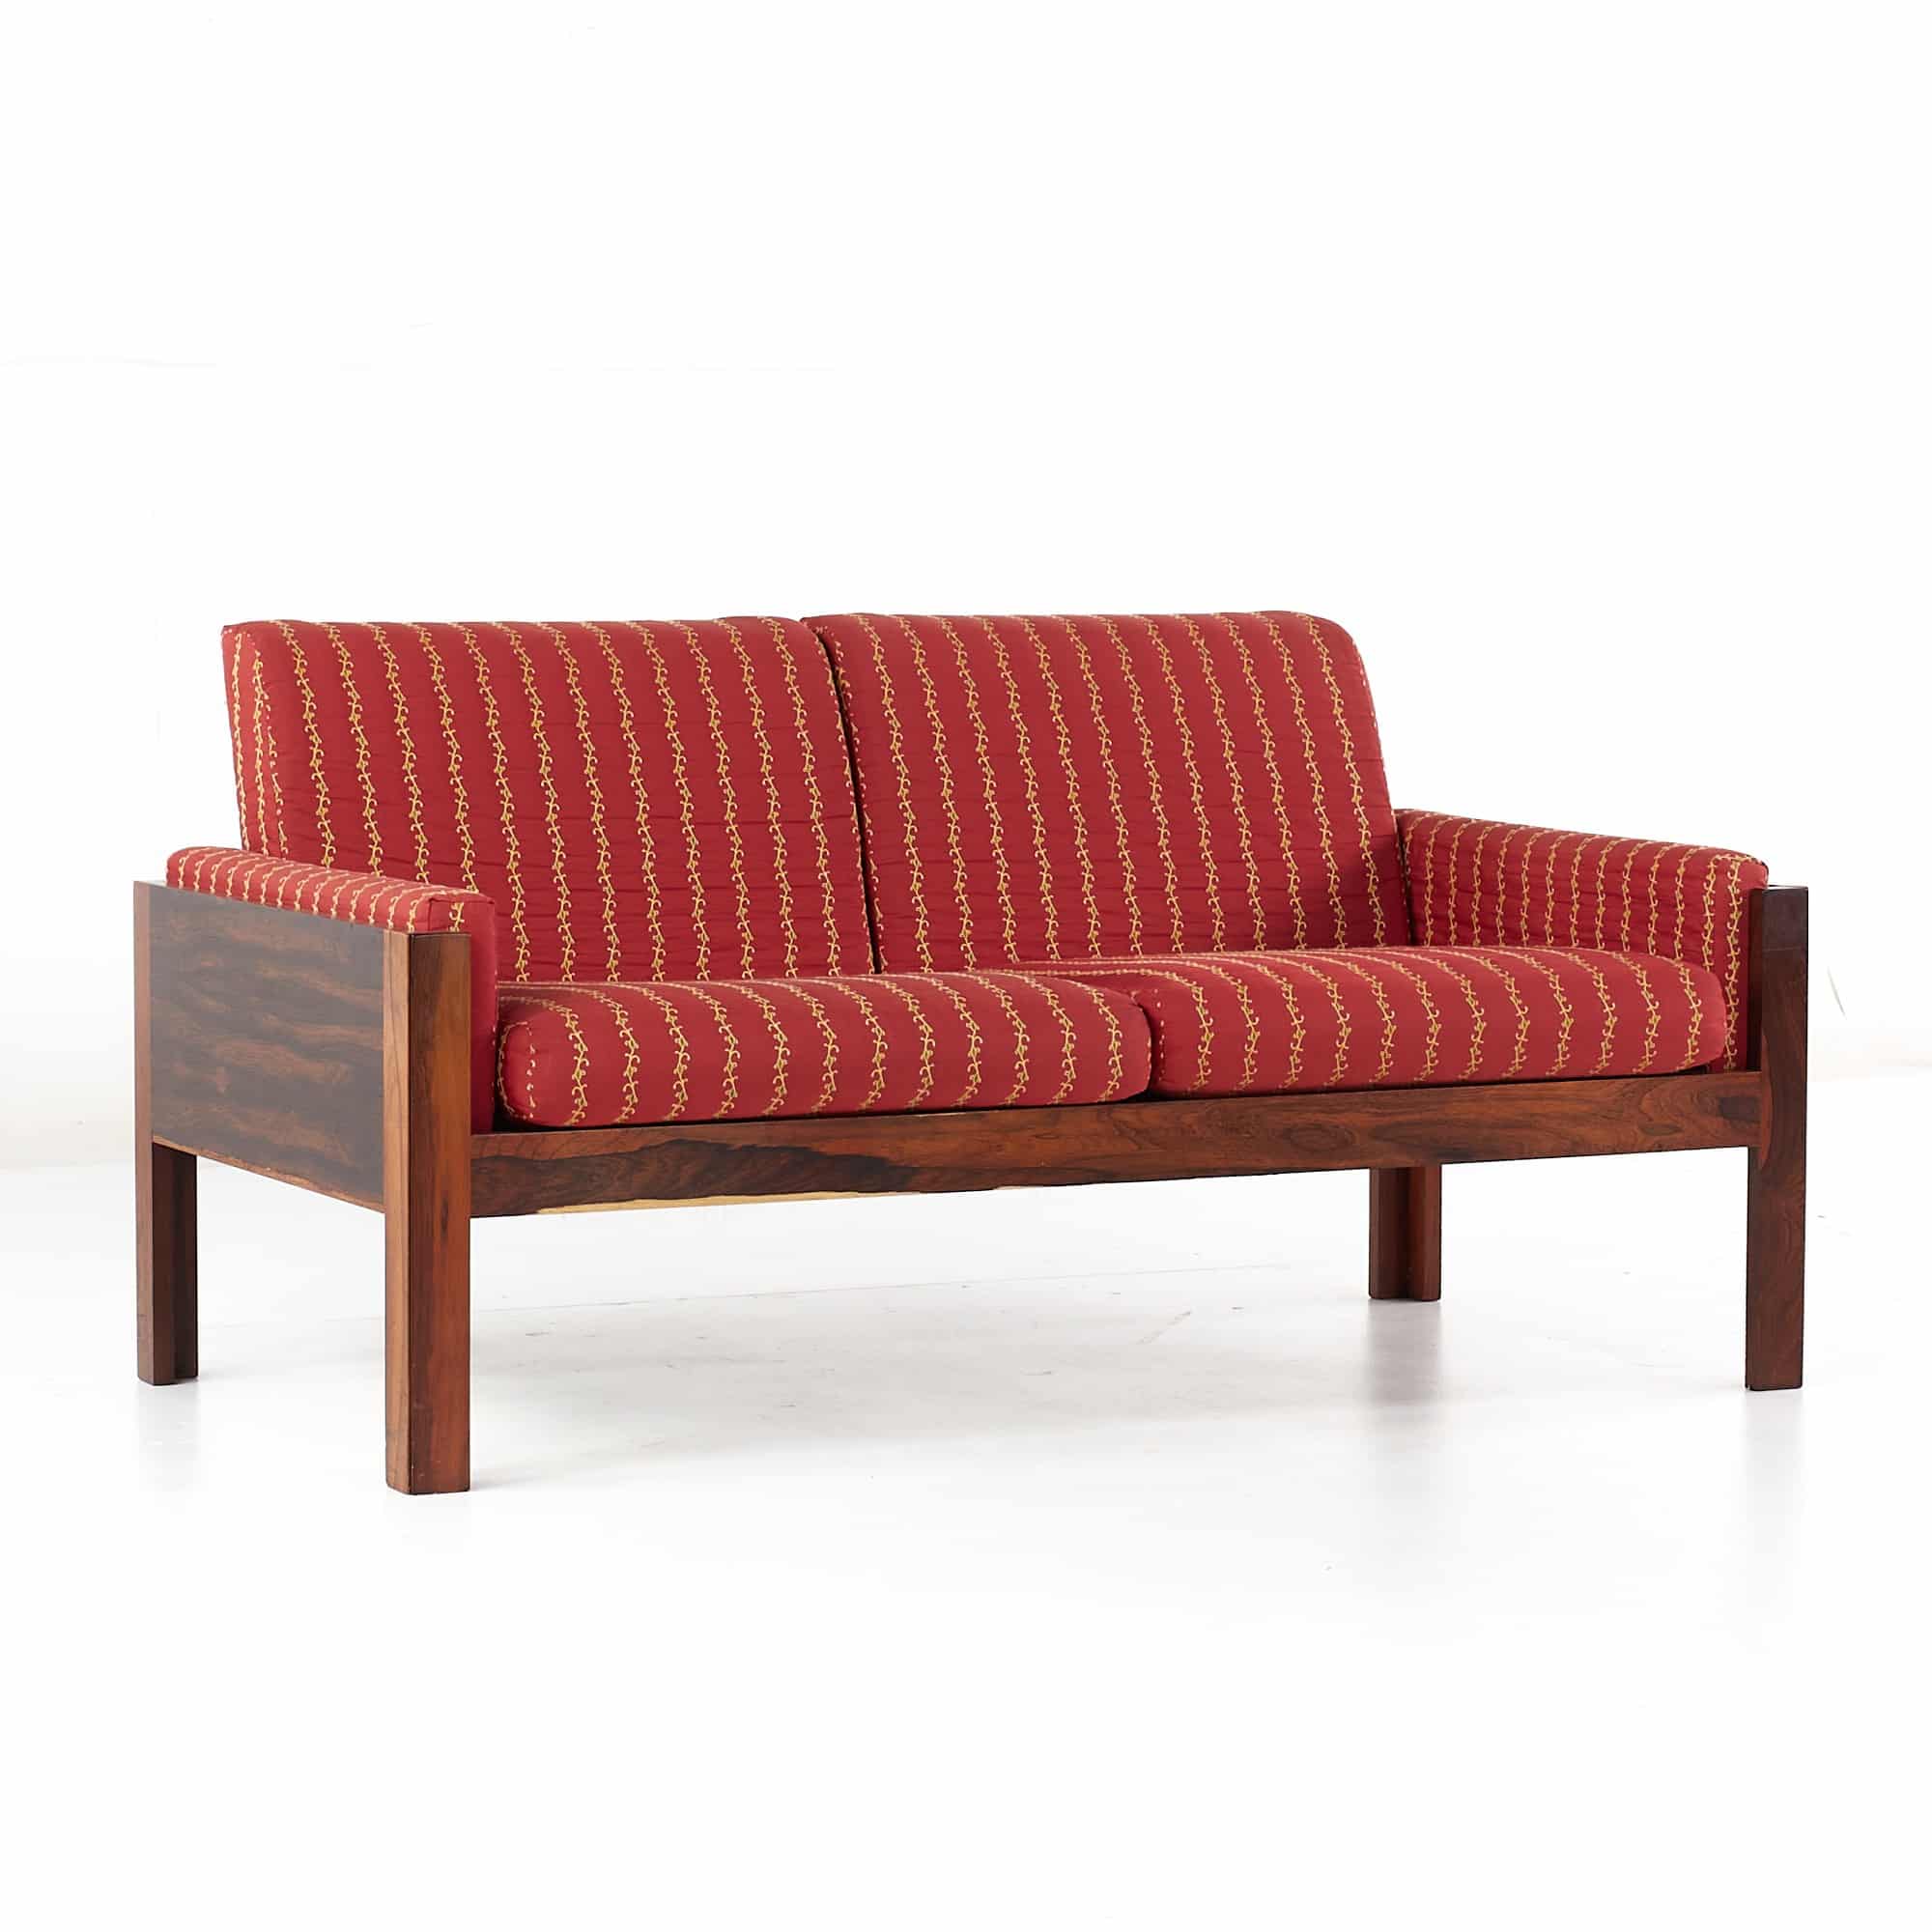 Arne Norell Style Mid Century Danish Rosewood Settee Loveseat Sofa